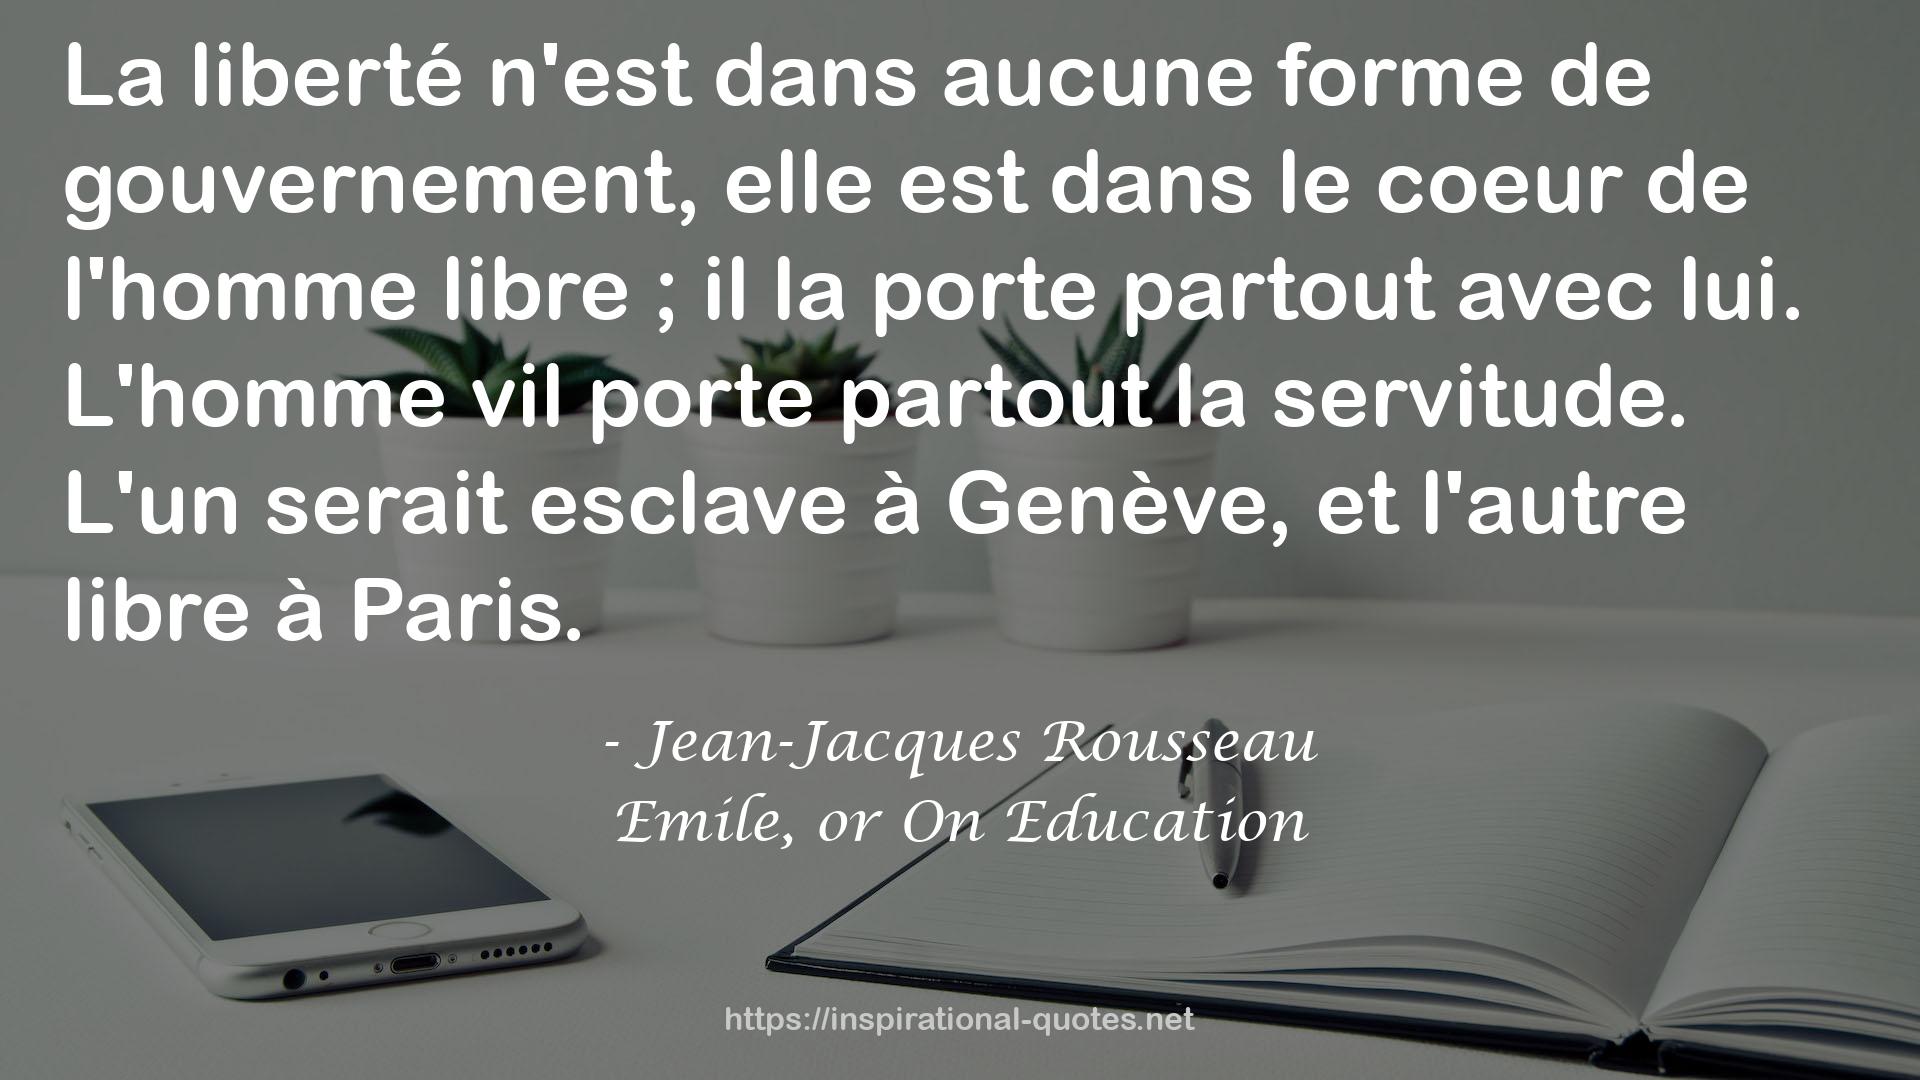 Jean-Jacques Rousseau QUOTES